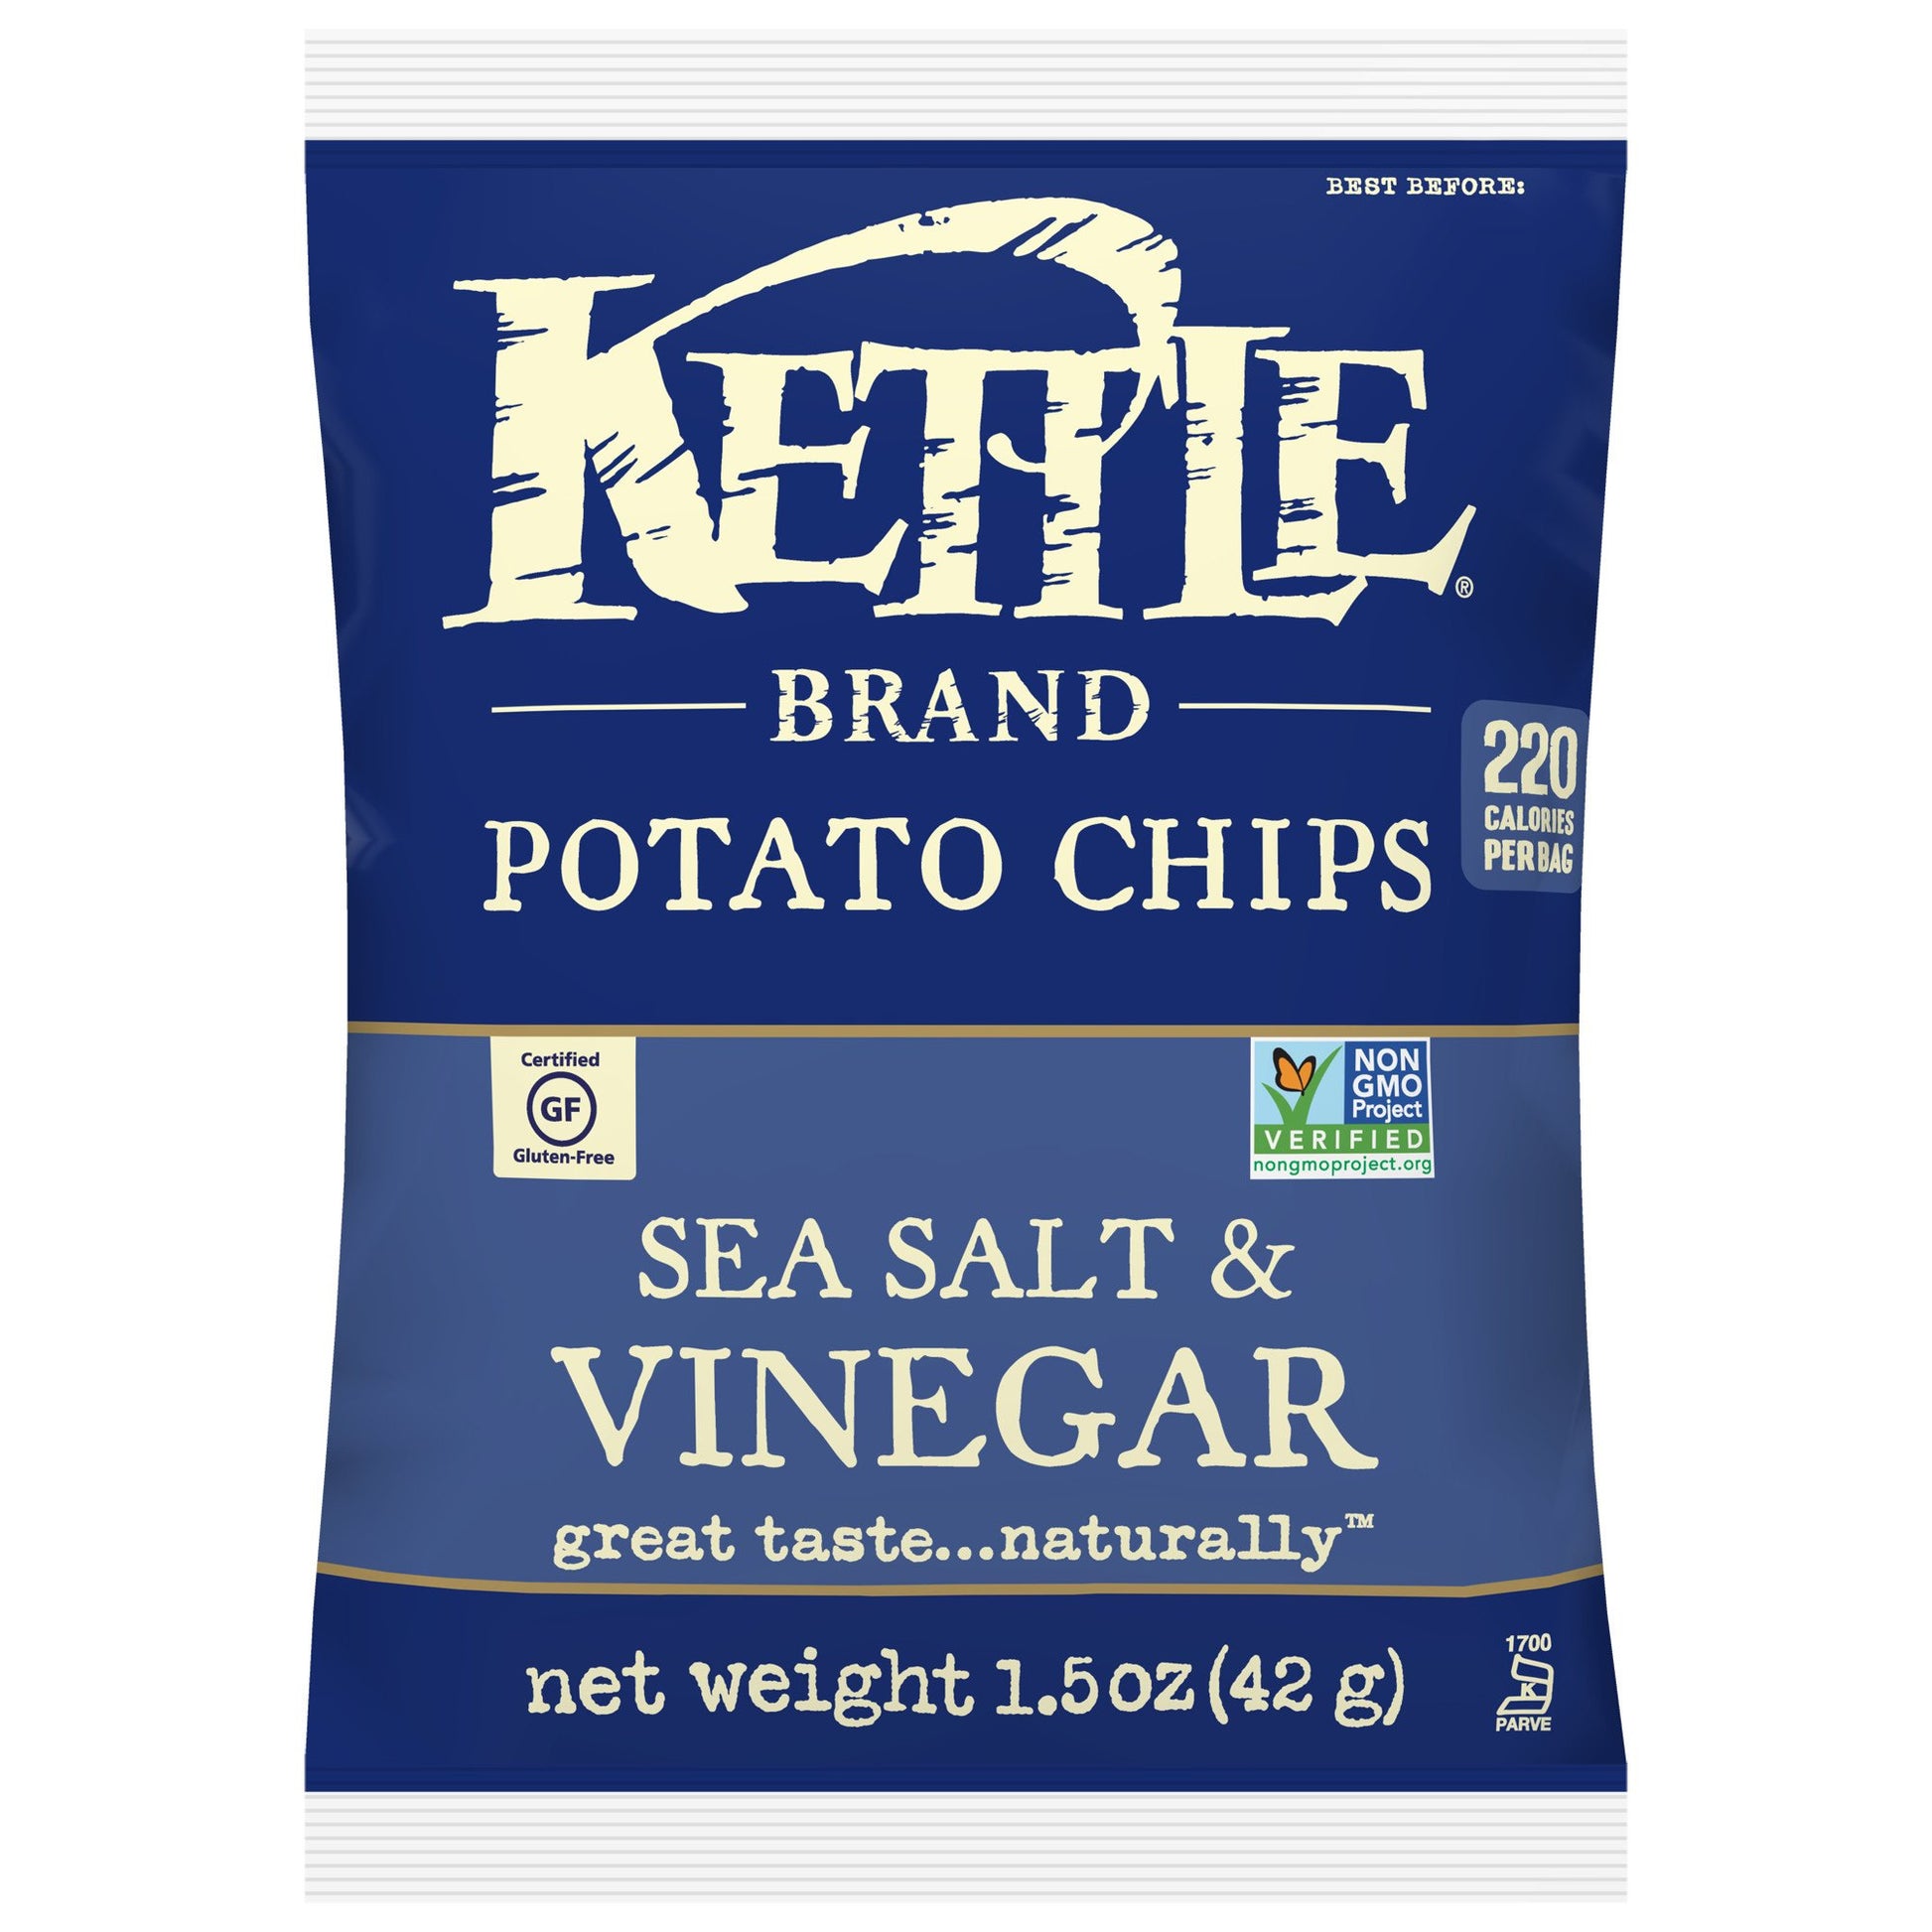 Kettle Sea Salt & Vinegar Potato Chips 42g